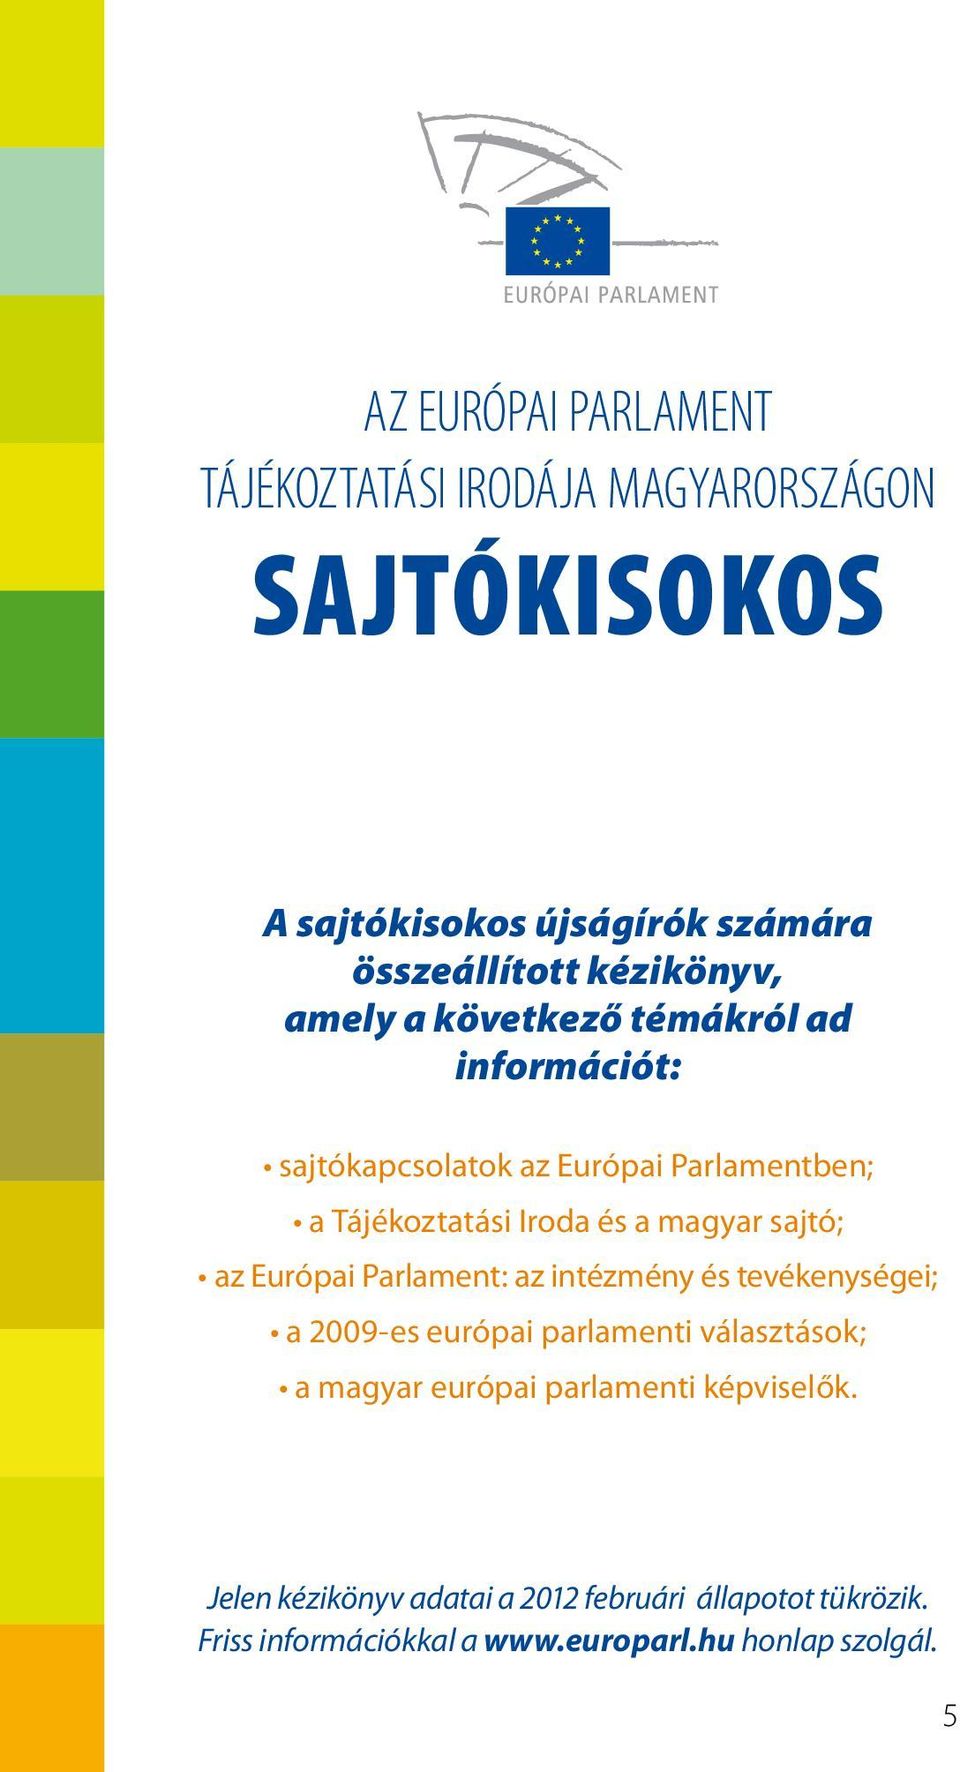 magyar sajtó; az Európai Parlament: az intézmény és tevékenységei; a 2009-es európai parlamenti választások; a magyar európai